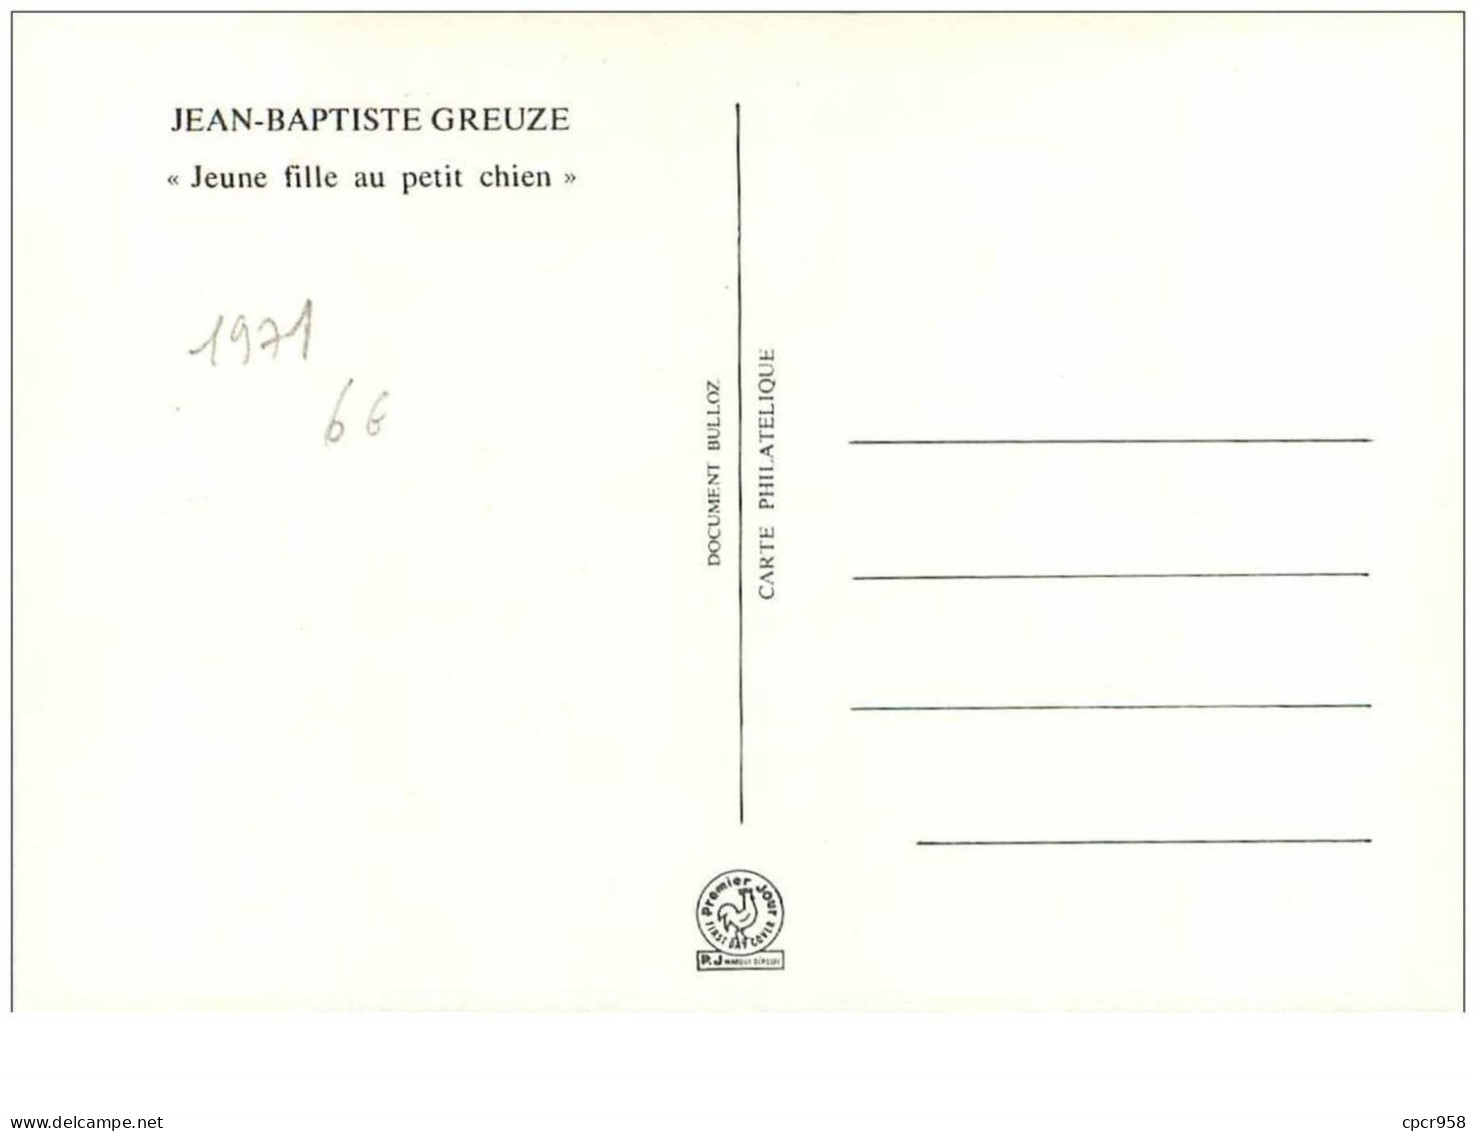 CROIX-ROUGE.n°28543.JEAN BAPTISTE GREUZE."JEUNE FILLE AU PETIT CHIEN".1971.CARTE MAXIMUM. - Rotes Kreuz